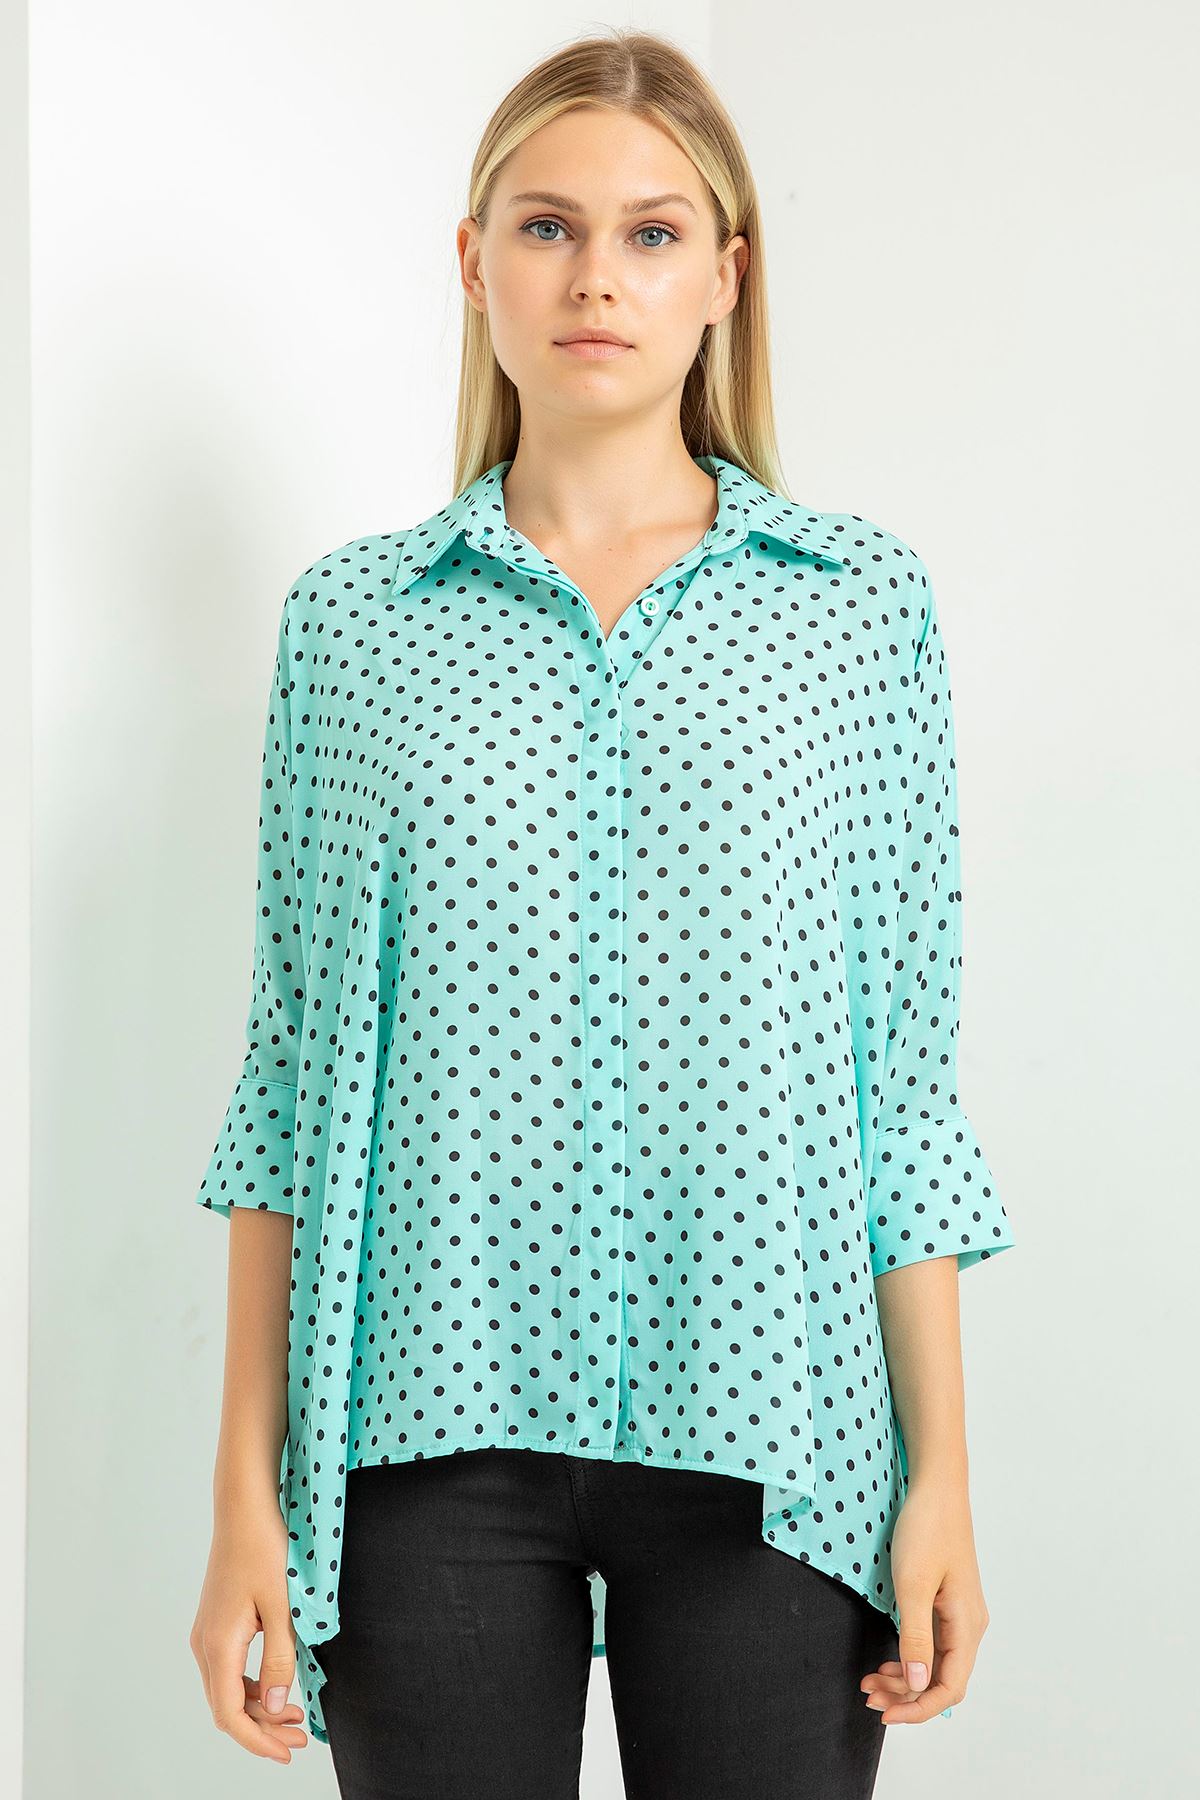 Jesica Fabric Wide Below Hip Oversize Polka-Dot Print Women'S Shirt - Mint